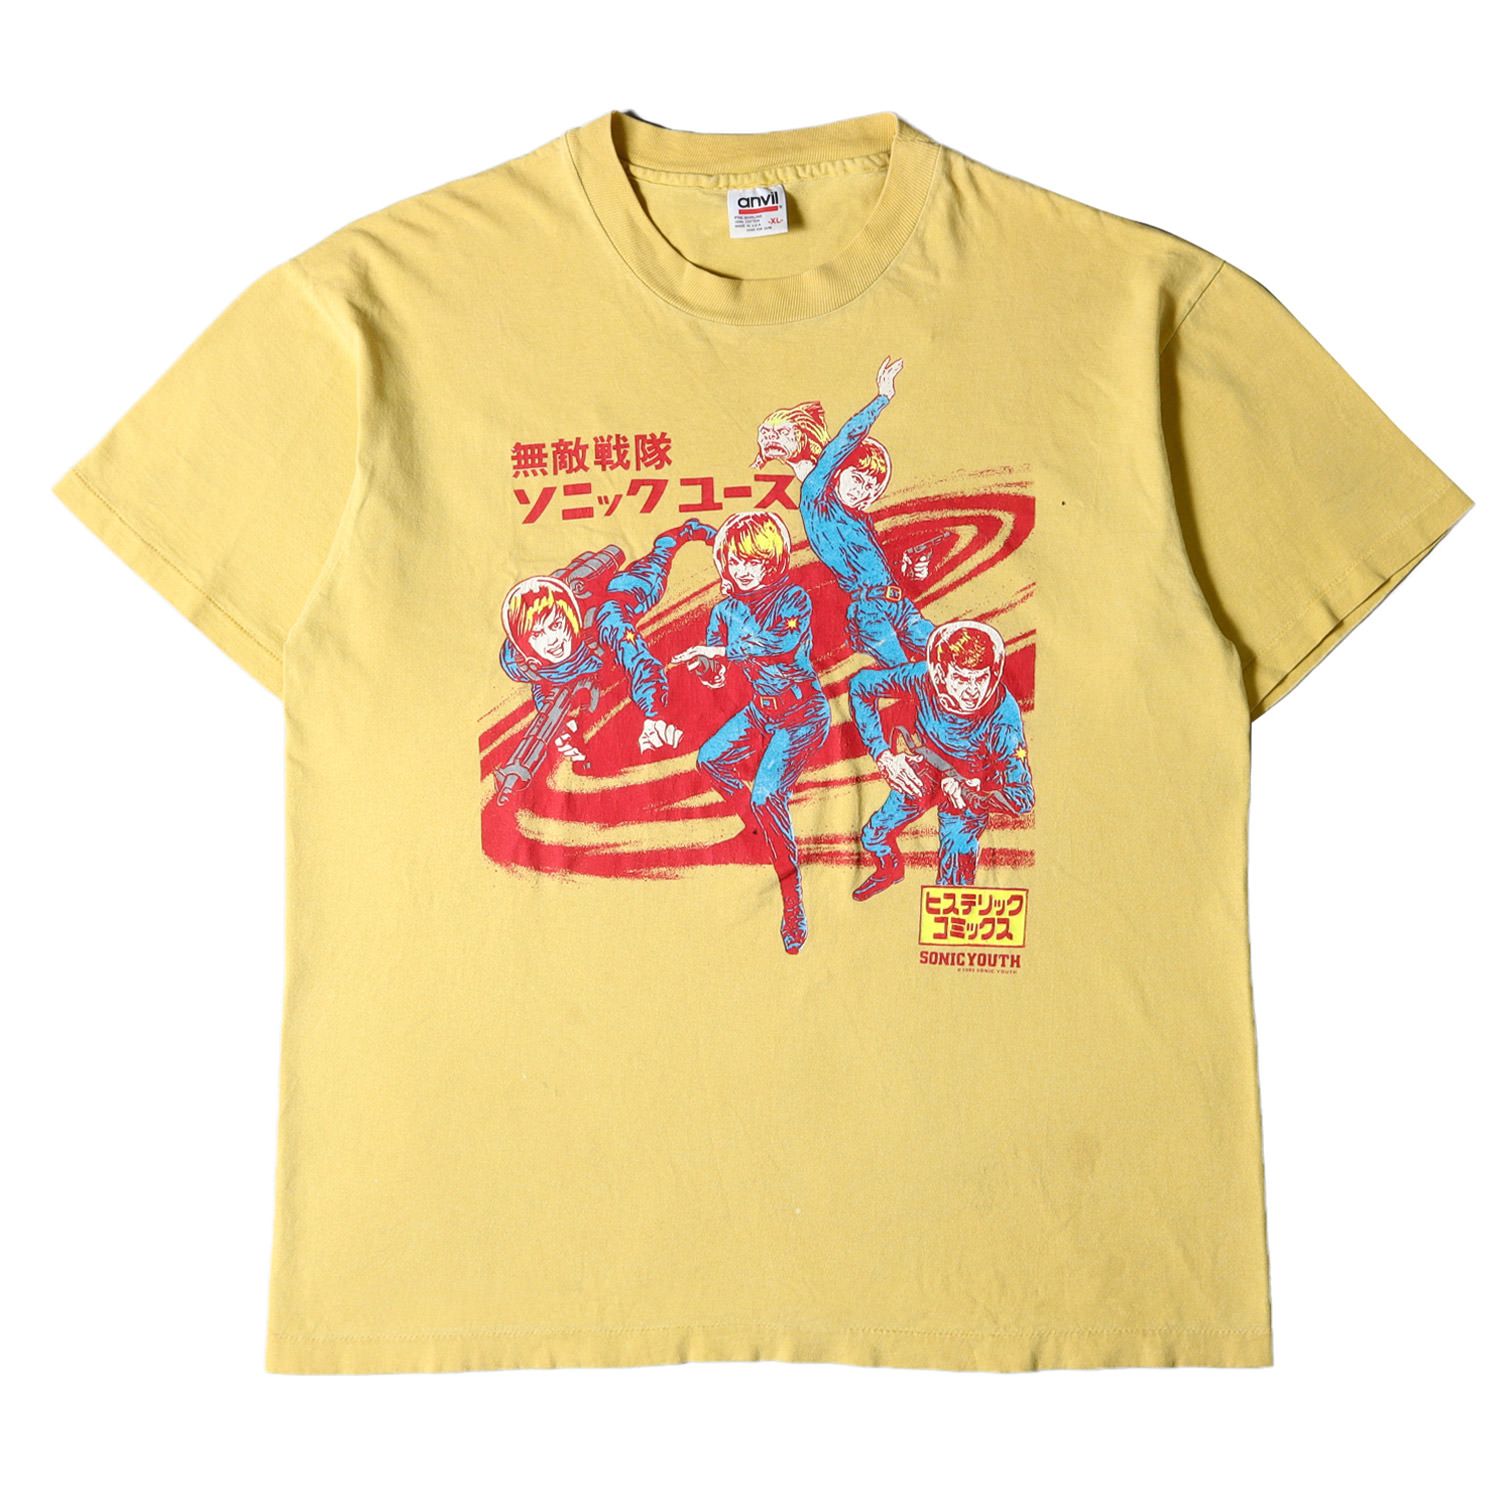 90'S SONIC YOUTH Tシャツ ヴィンテージ サイズXL - Tシャツ